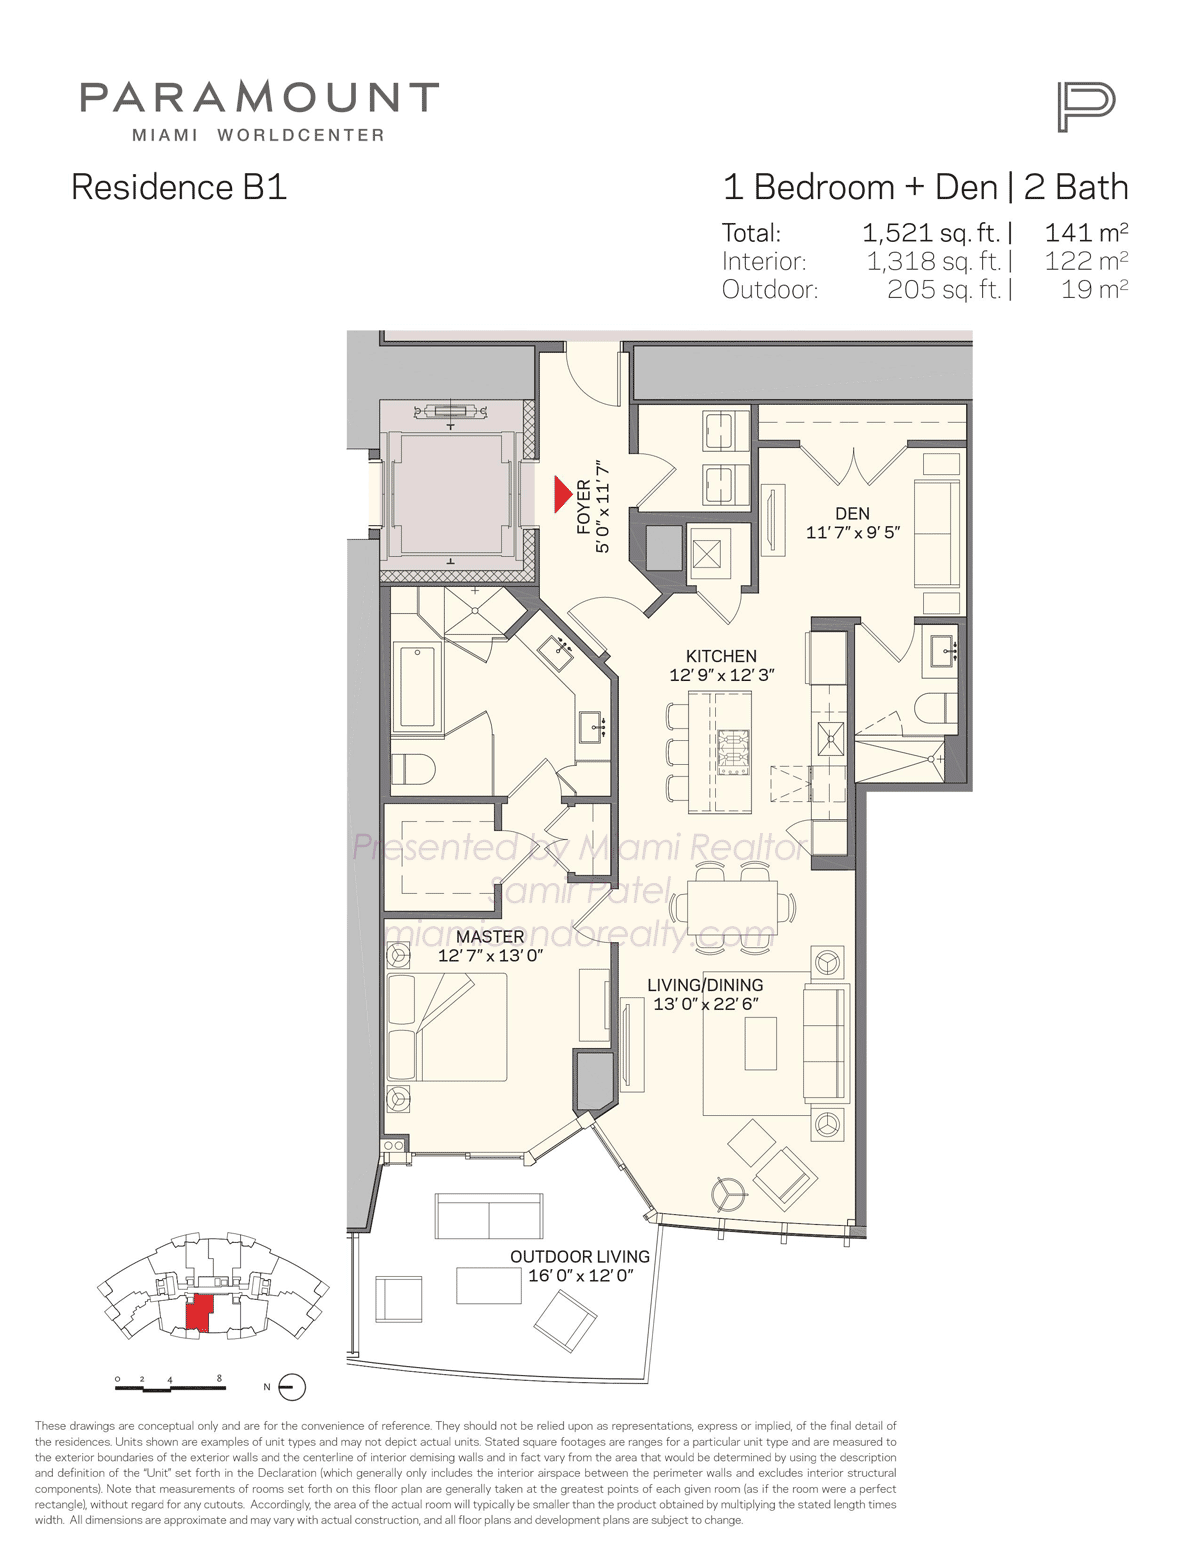 Paramount Miami Worldcenter Residence Model B1 Floorplan